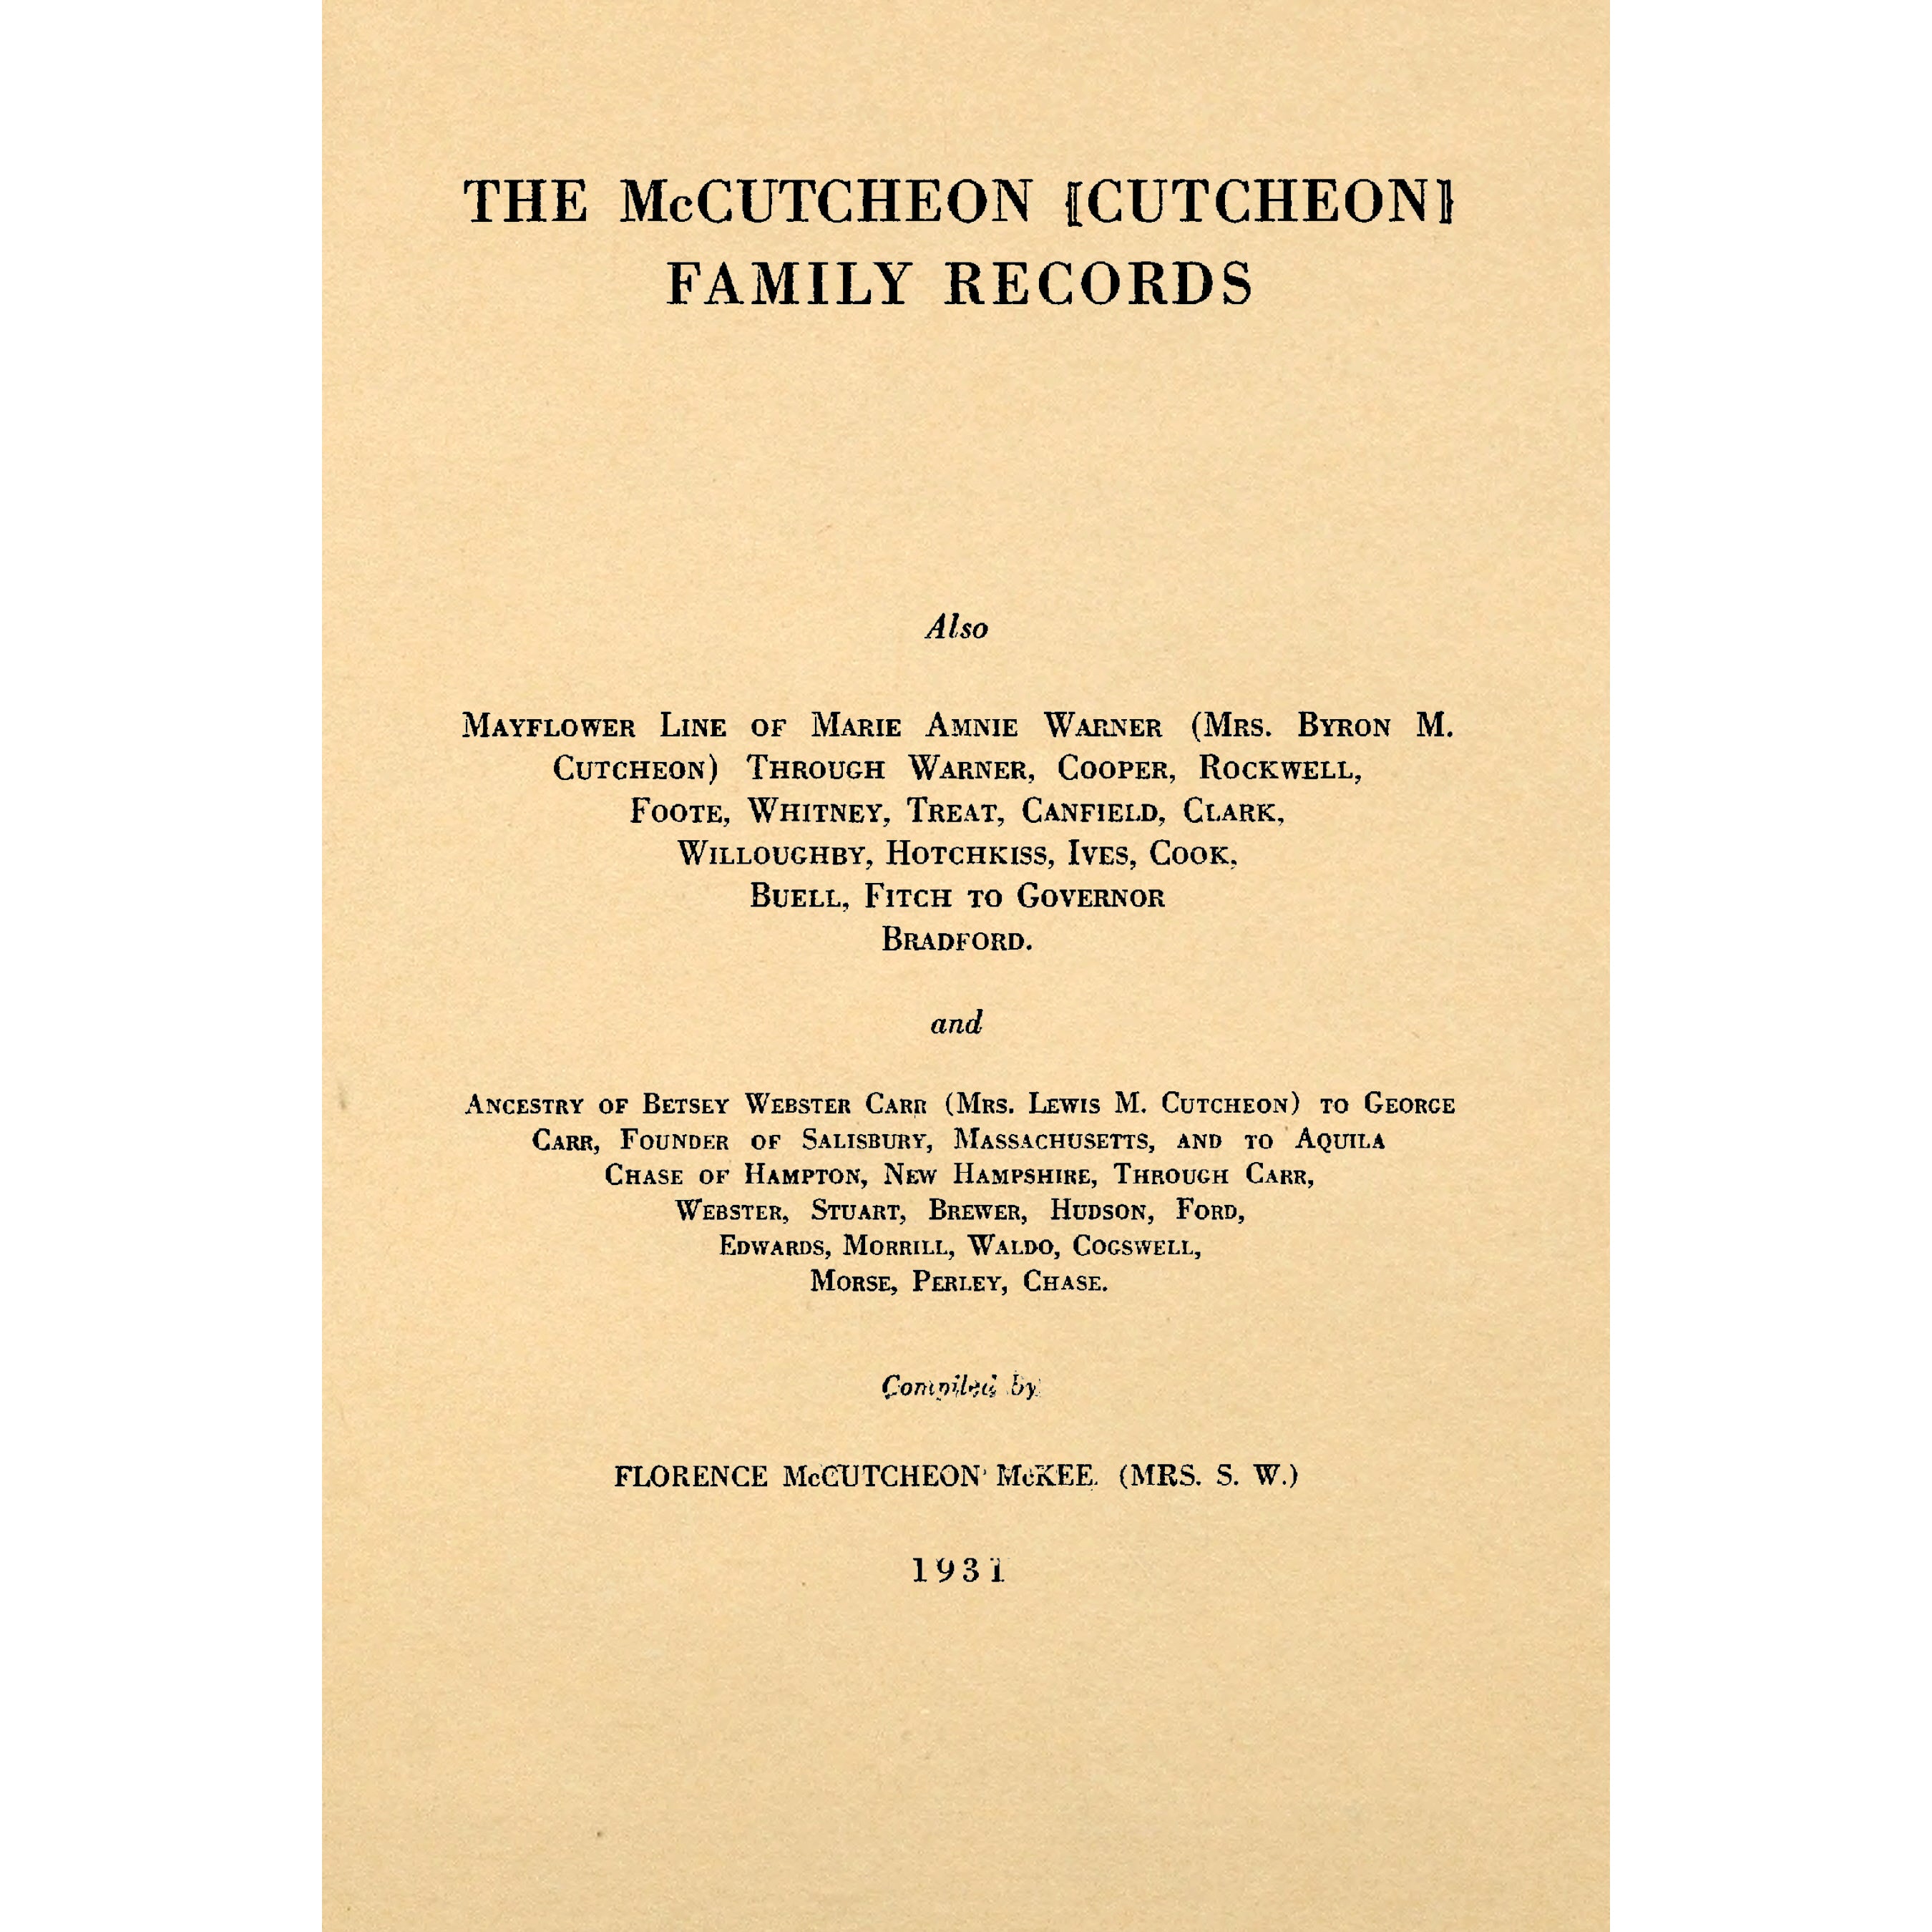 The McCutcheon (Cutcheon) family records